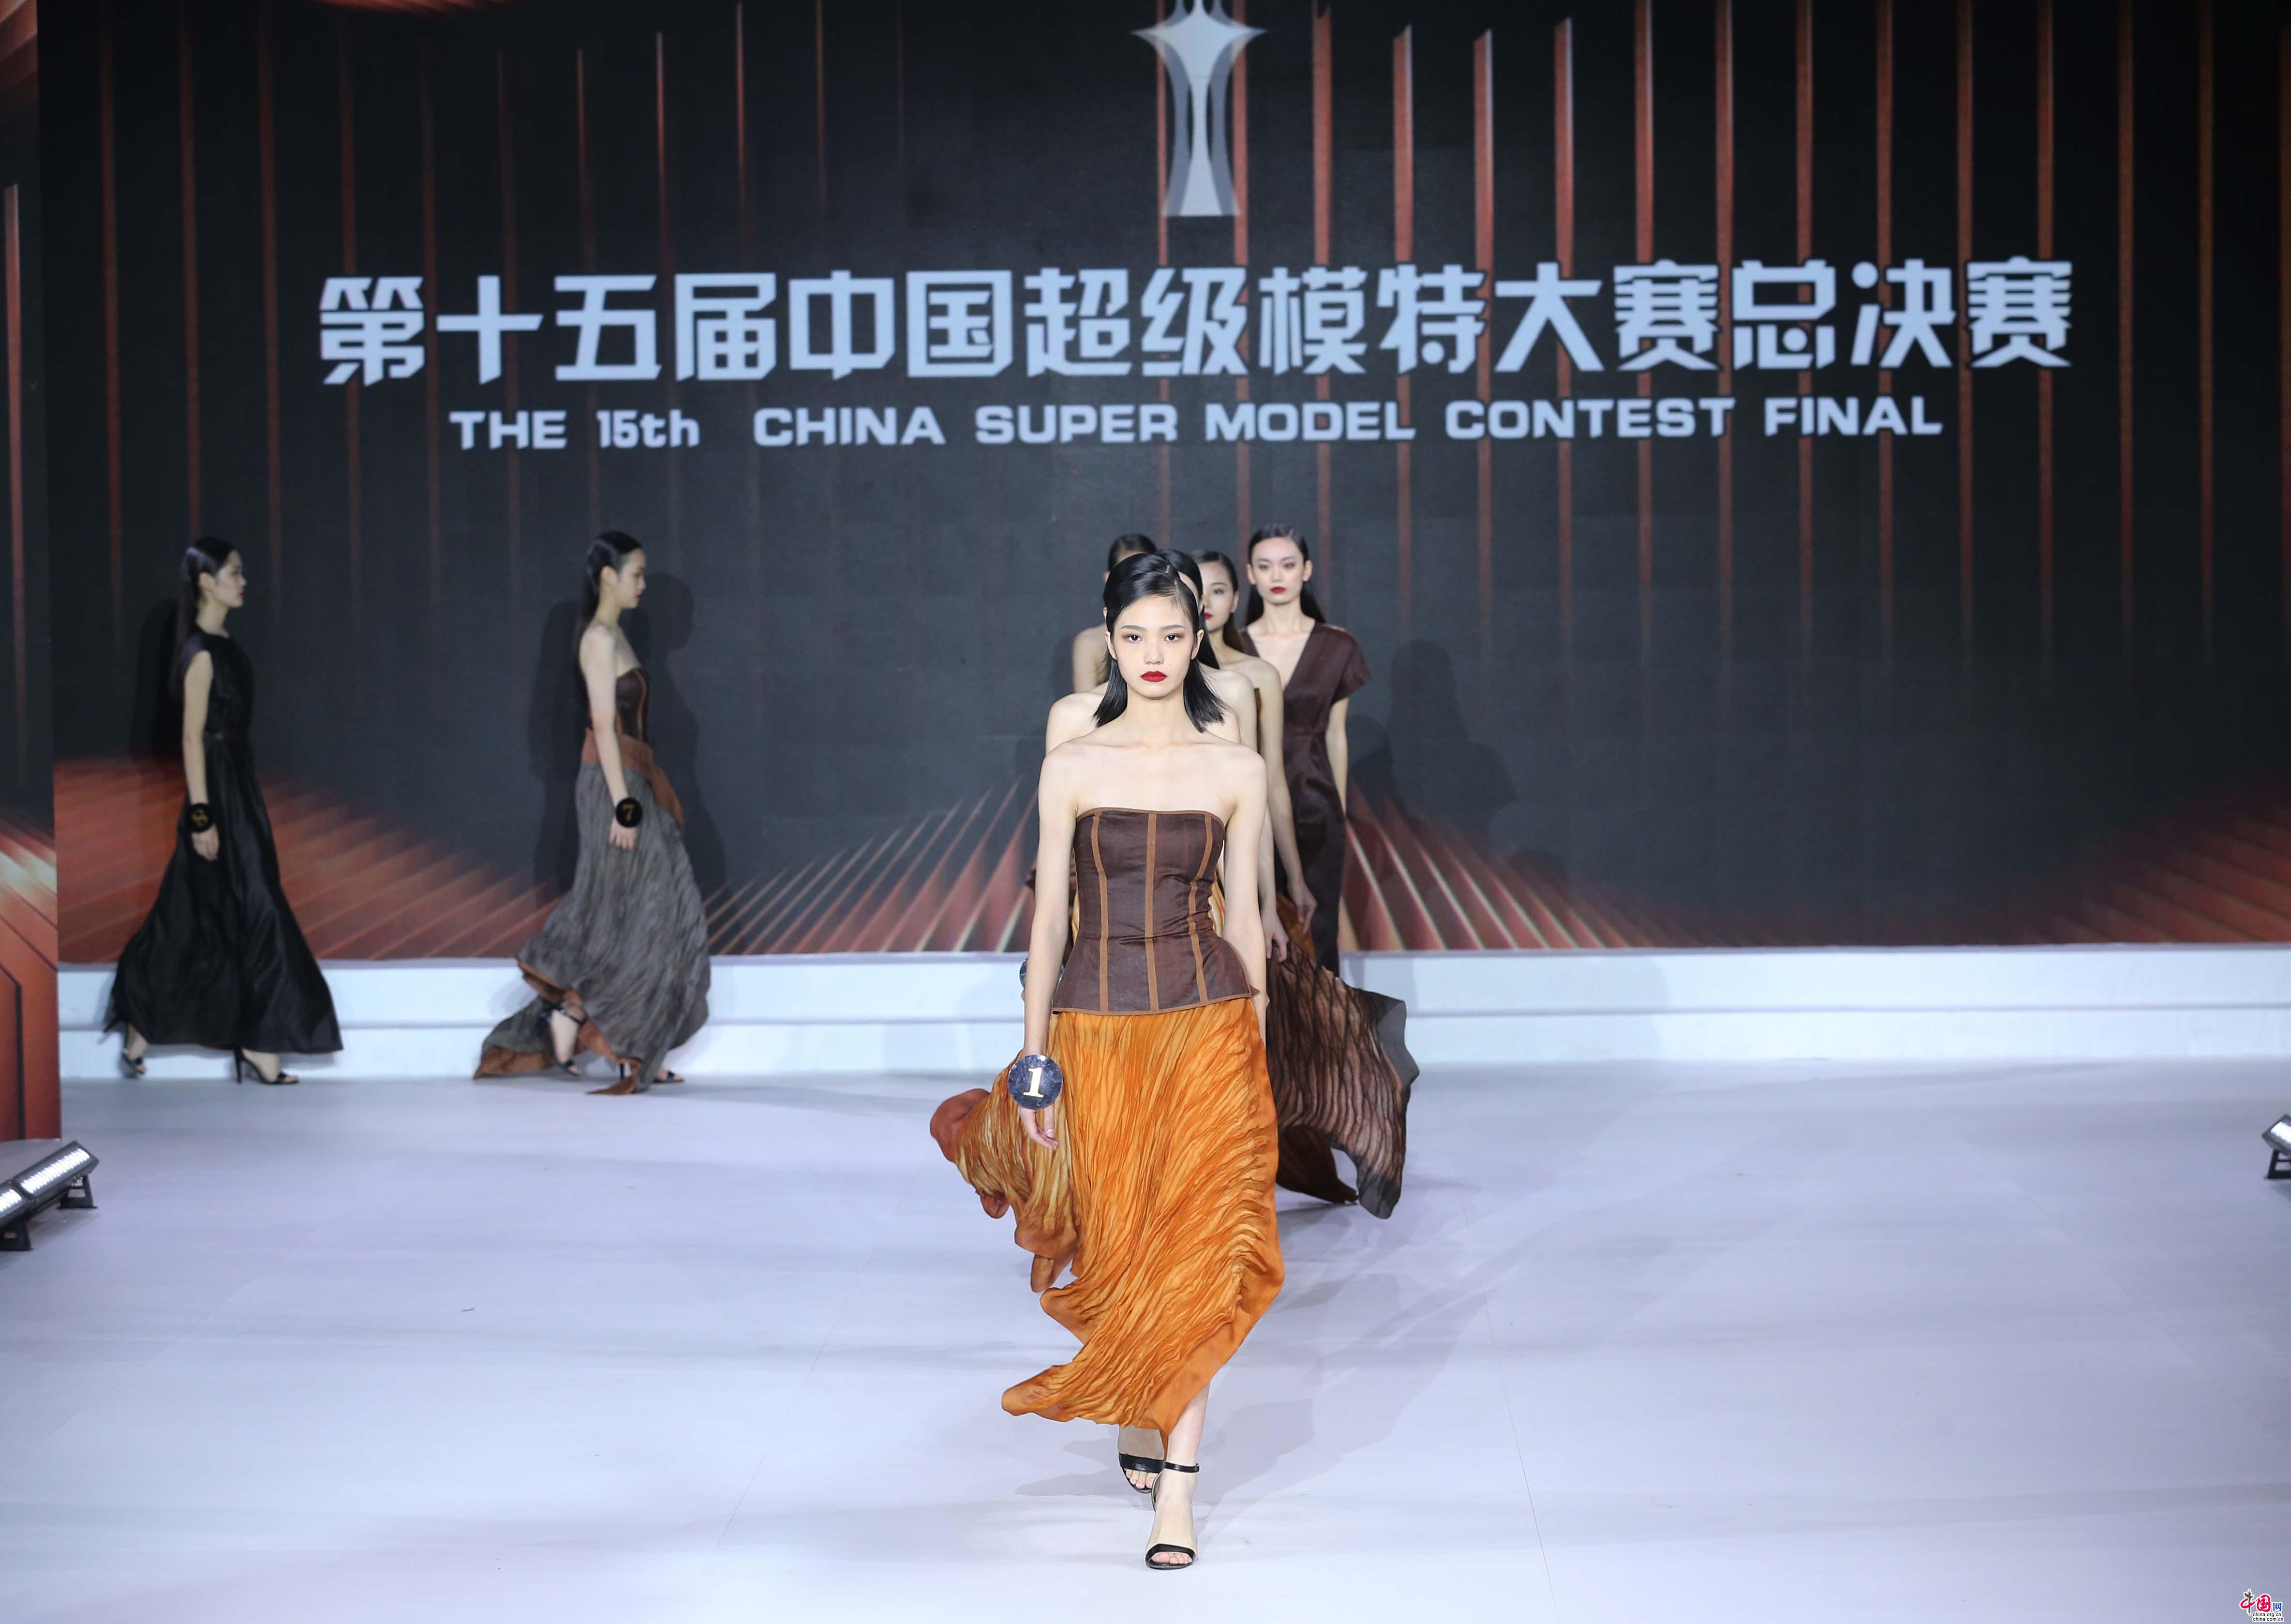 18岁女孩陈驰成为新一代中国超级模特大赛冠军